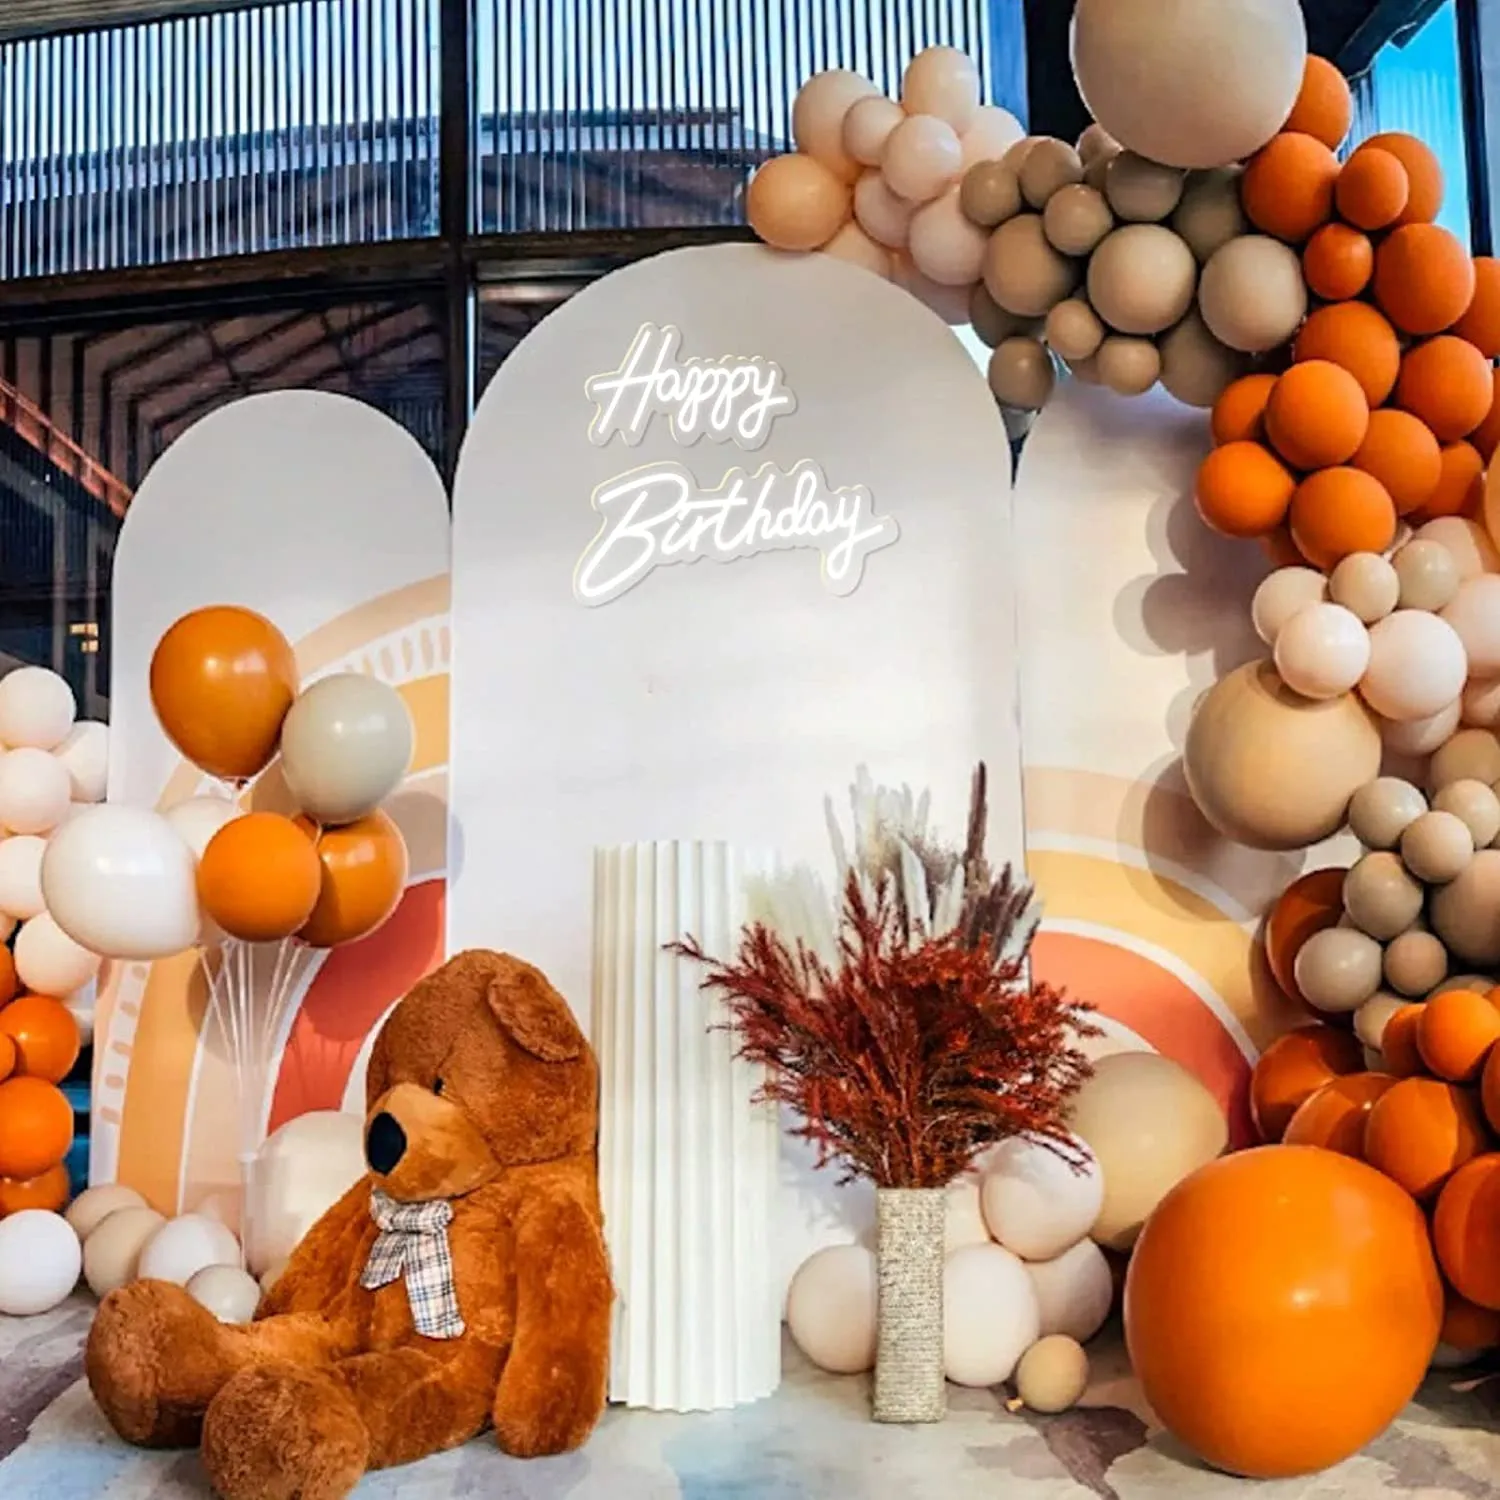 생일 축하 파티 장식 수제 네온 라이트 12 v 슈퍼 밝은 분위기 조명 LED 표지판 휴일 장식 파티 장식